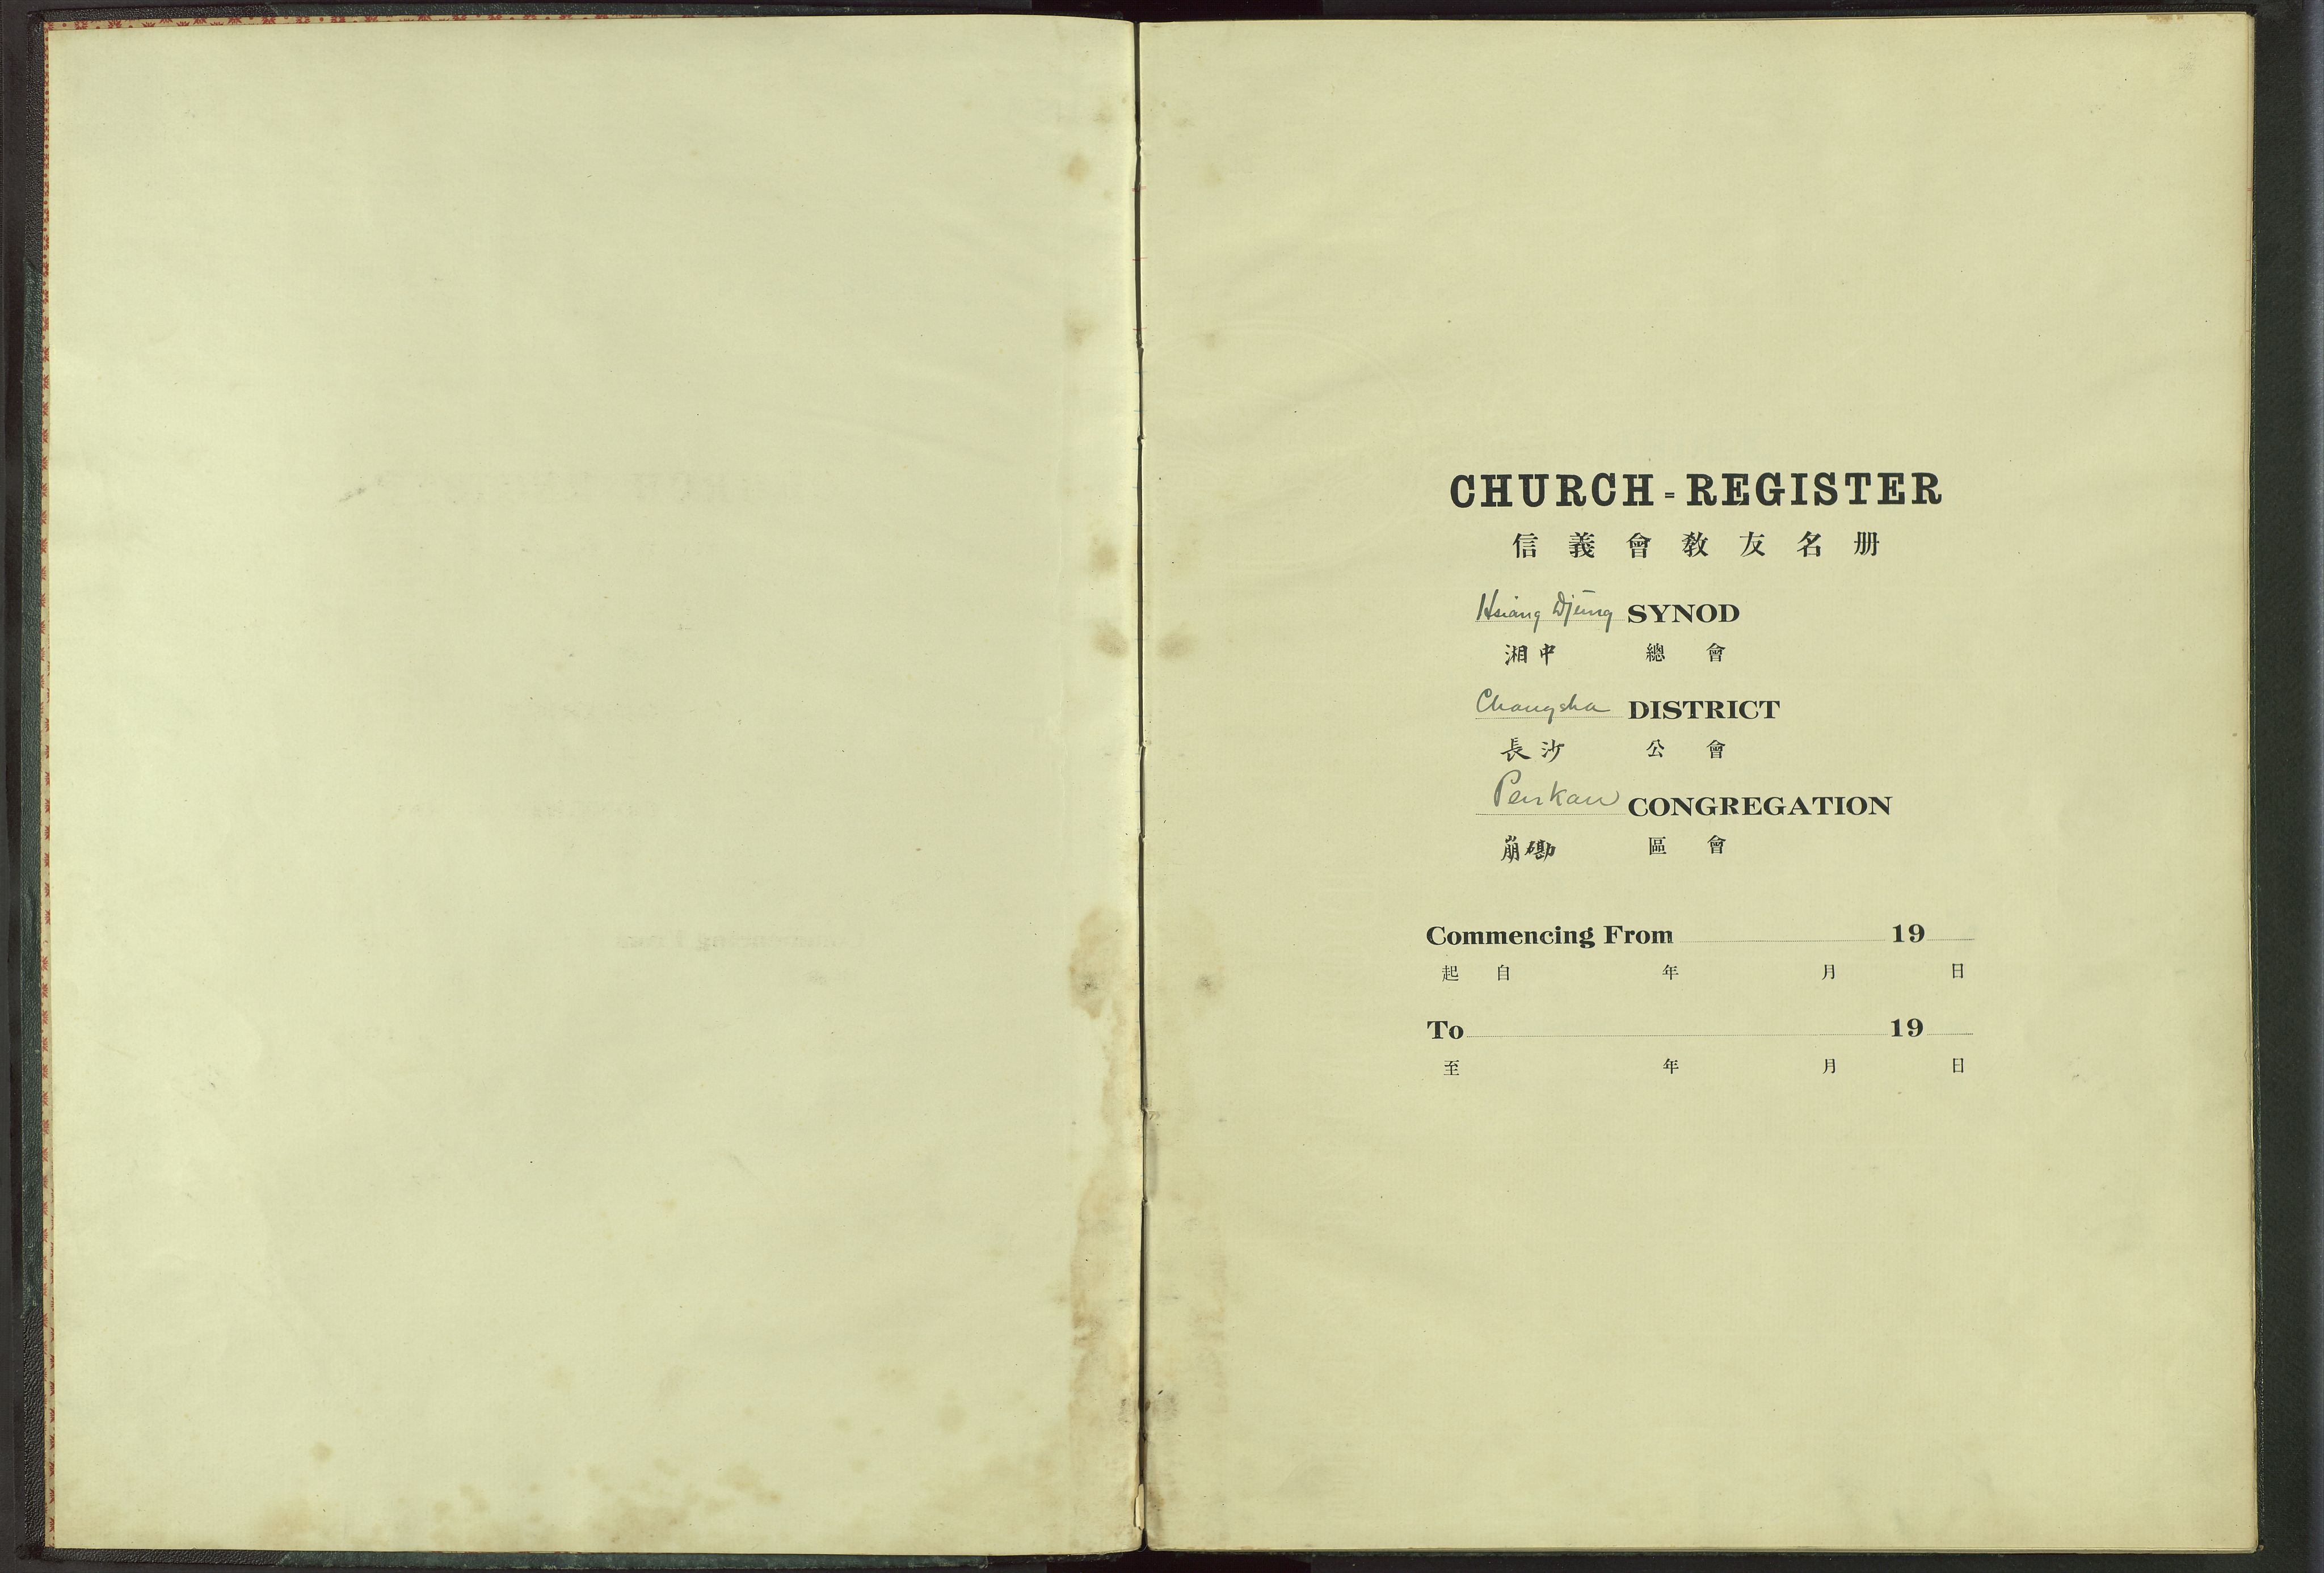 Det Norske Misjonsselskap - utland - Kina (Hunan), VID/MA-A-1065/Dm/L0017: Parish register (official) no. -, 1913-1948